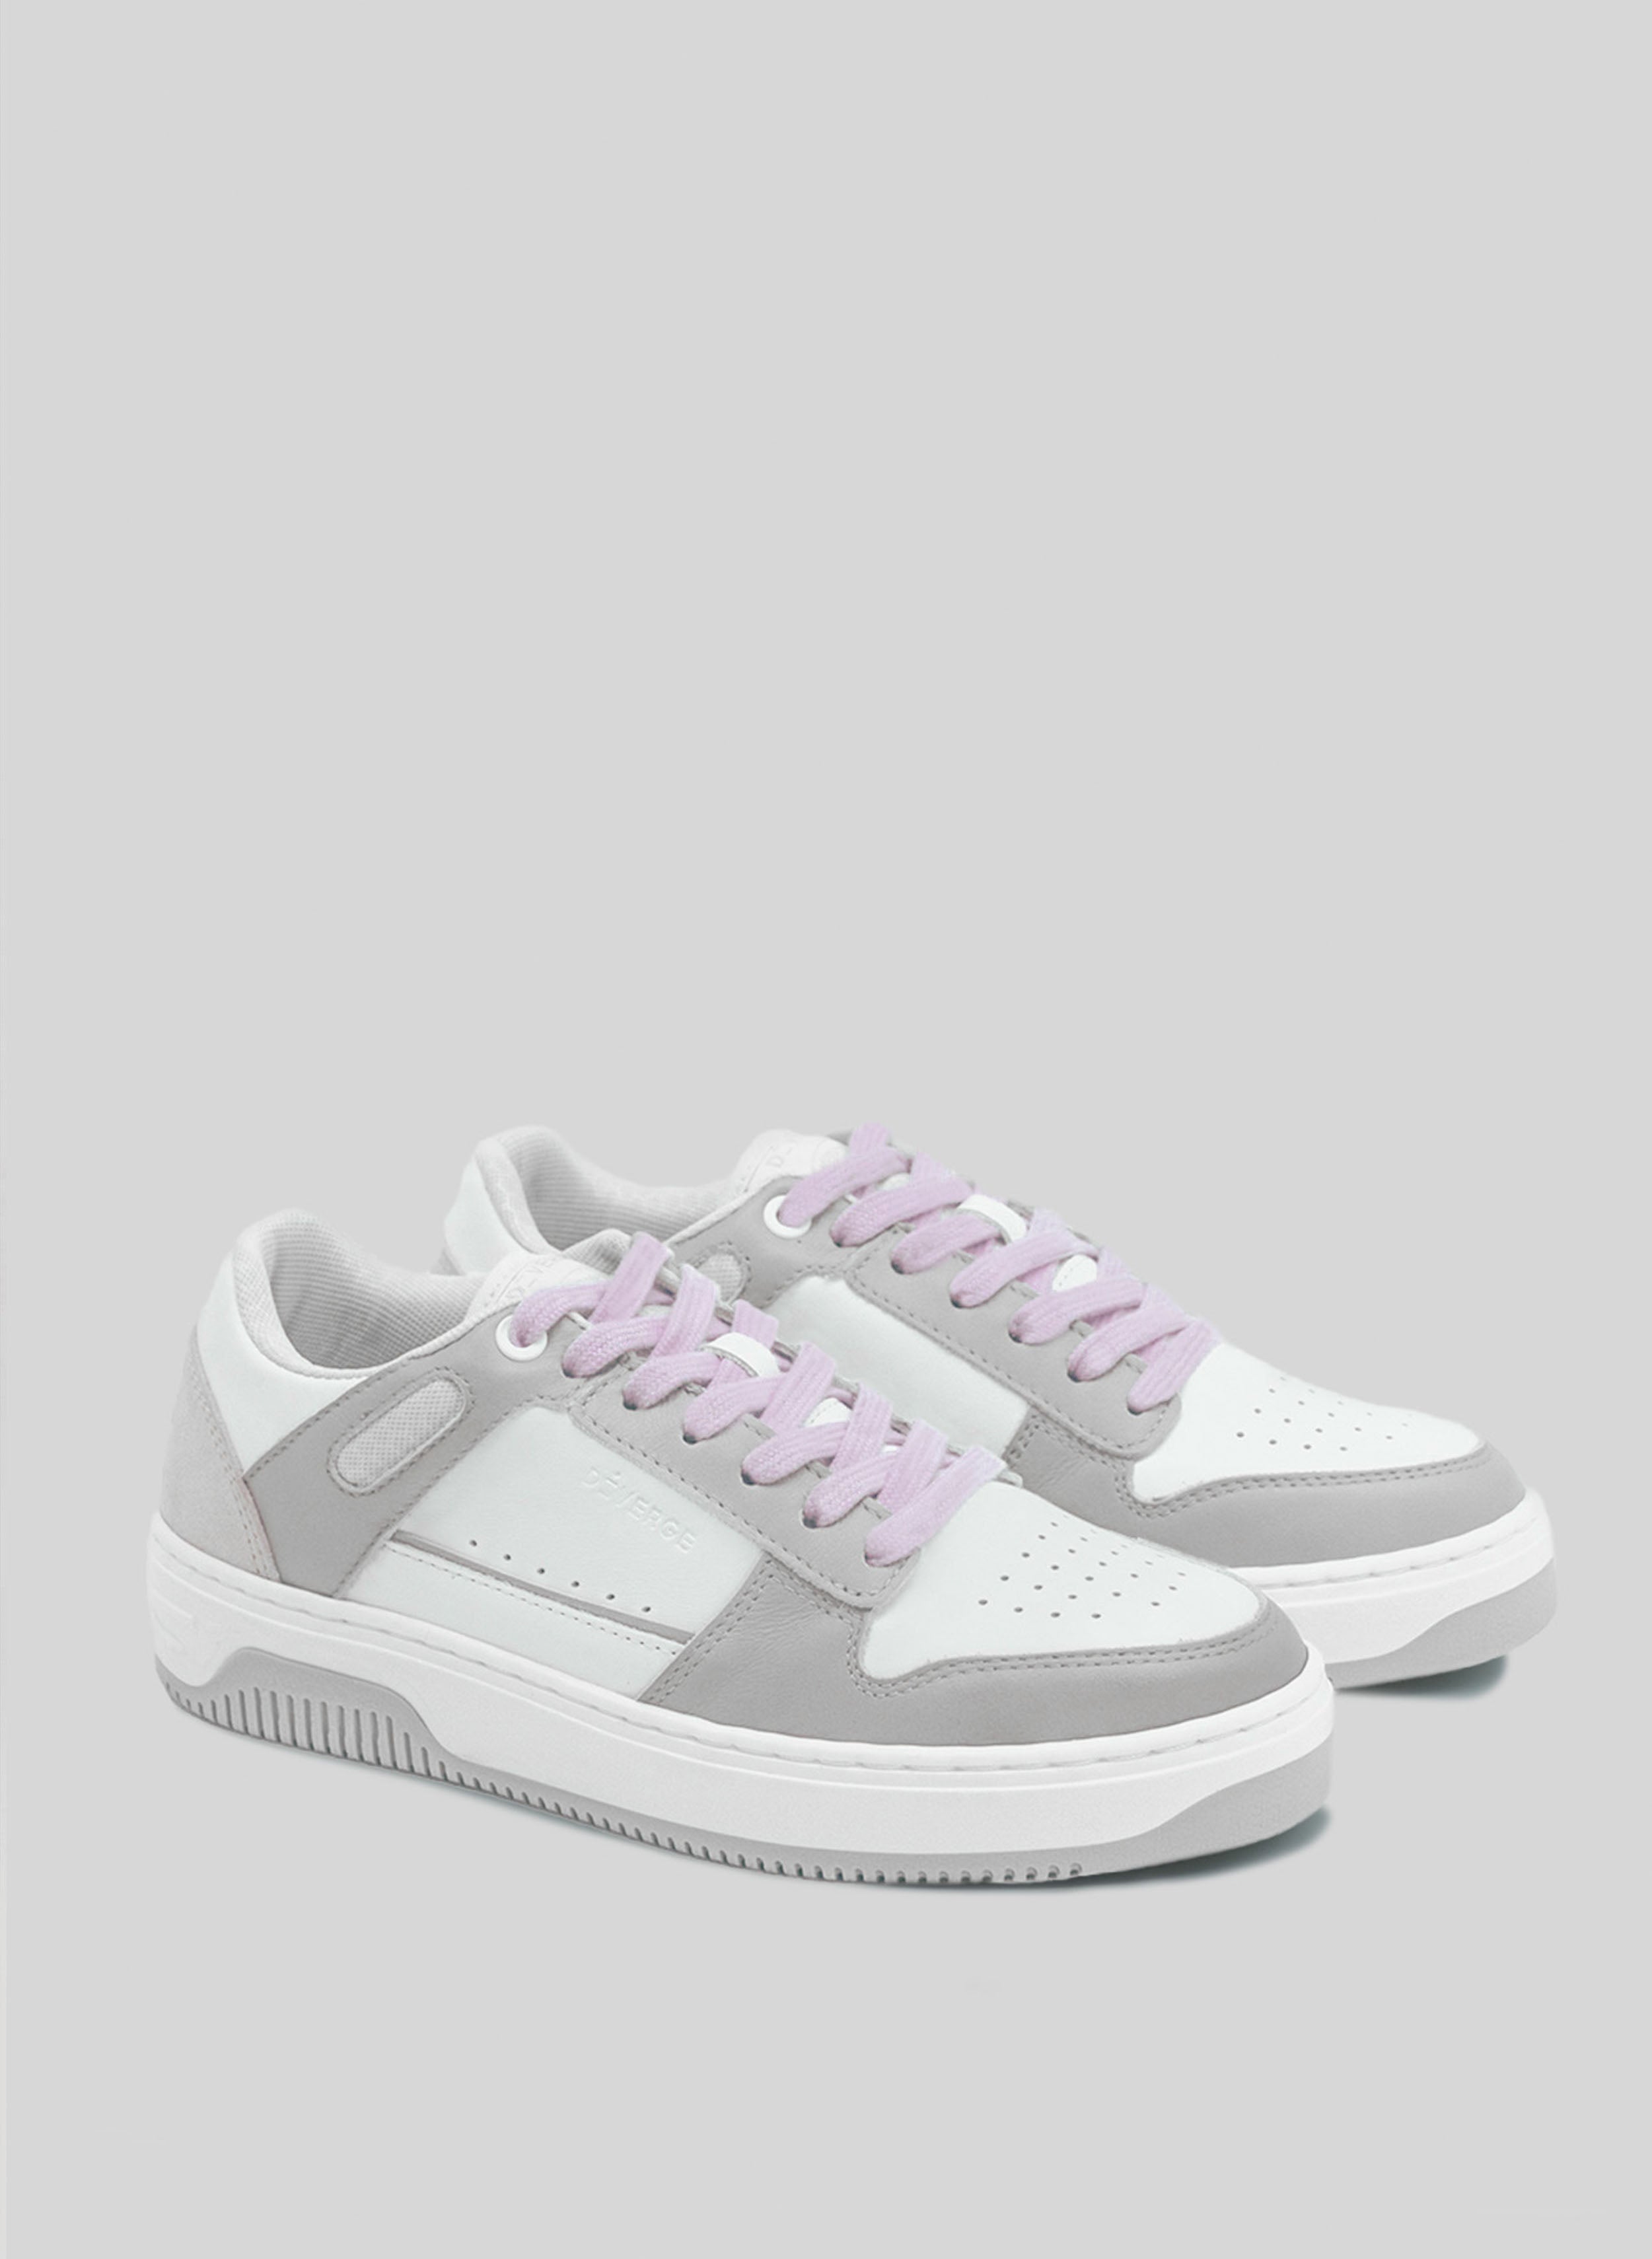 Una sneaker bianca e grigia con lacci viola, di Diverge che promuove l'impatto sociale e le scarpe personalizzate attraverso il progetto imagine.